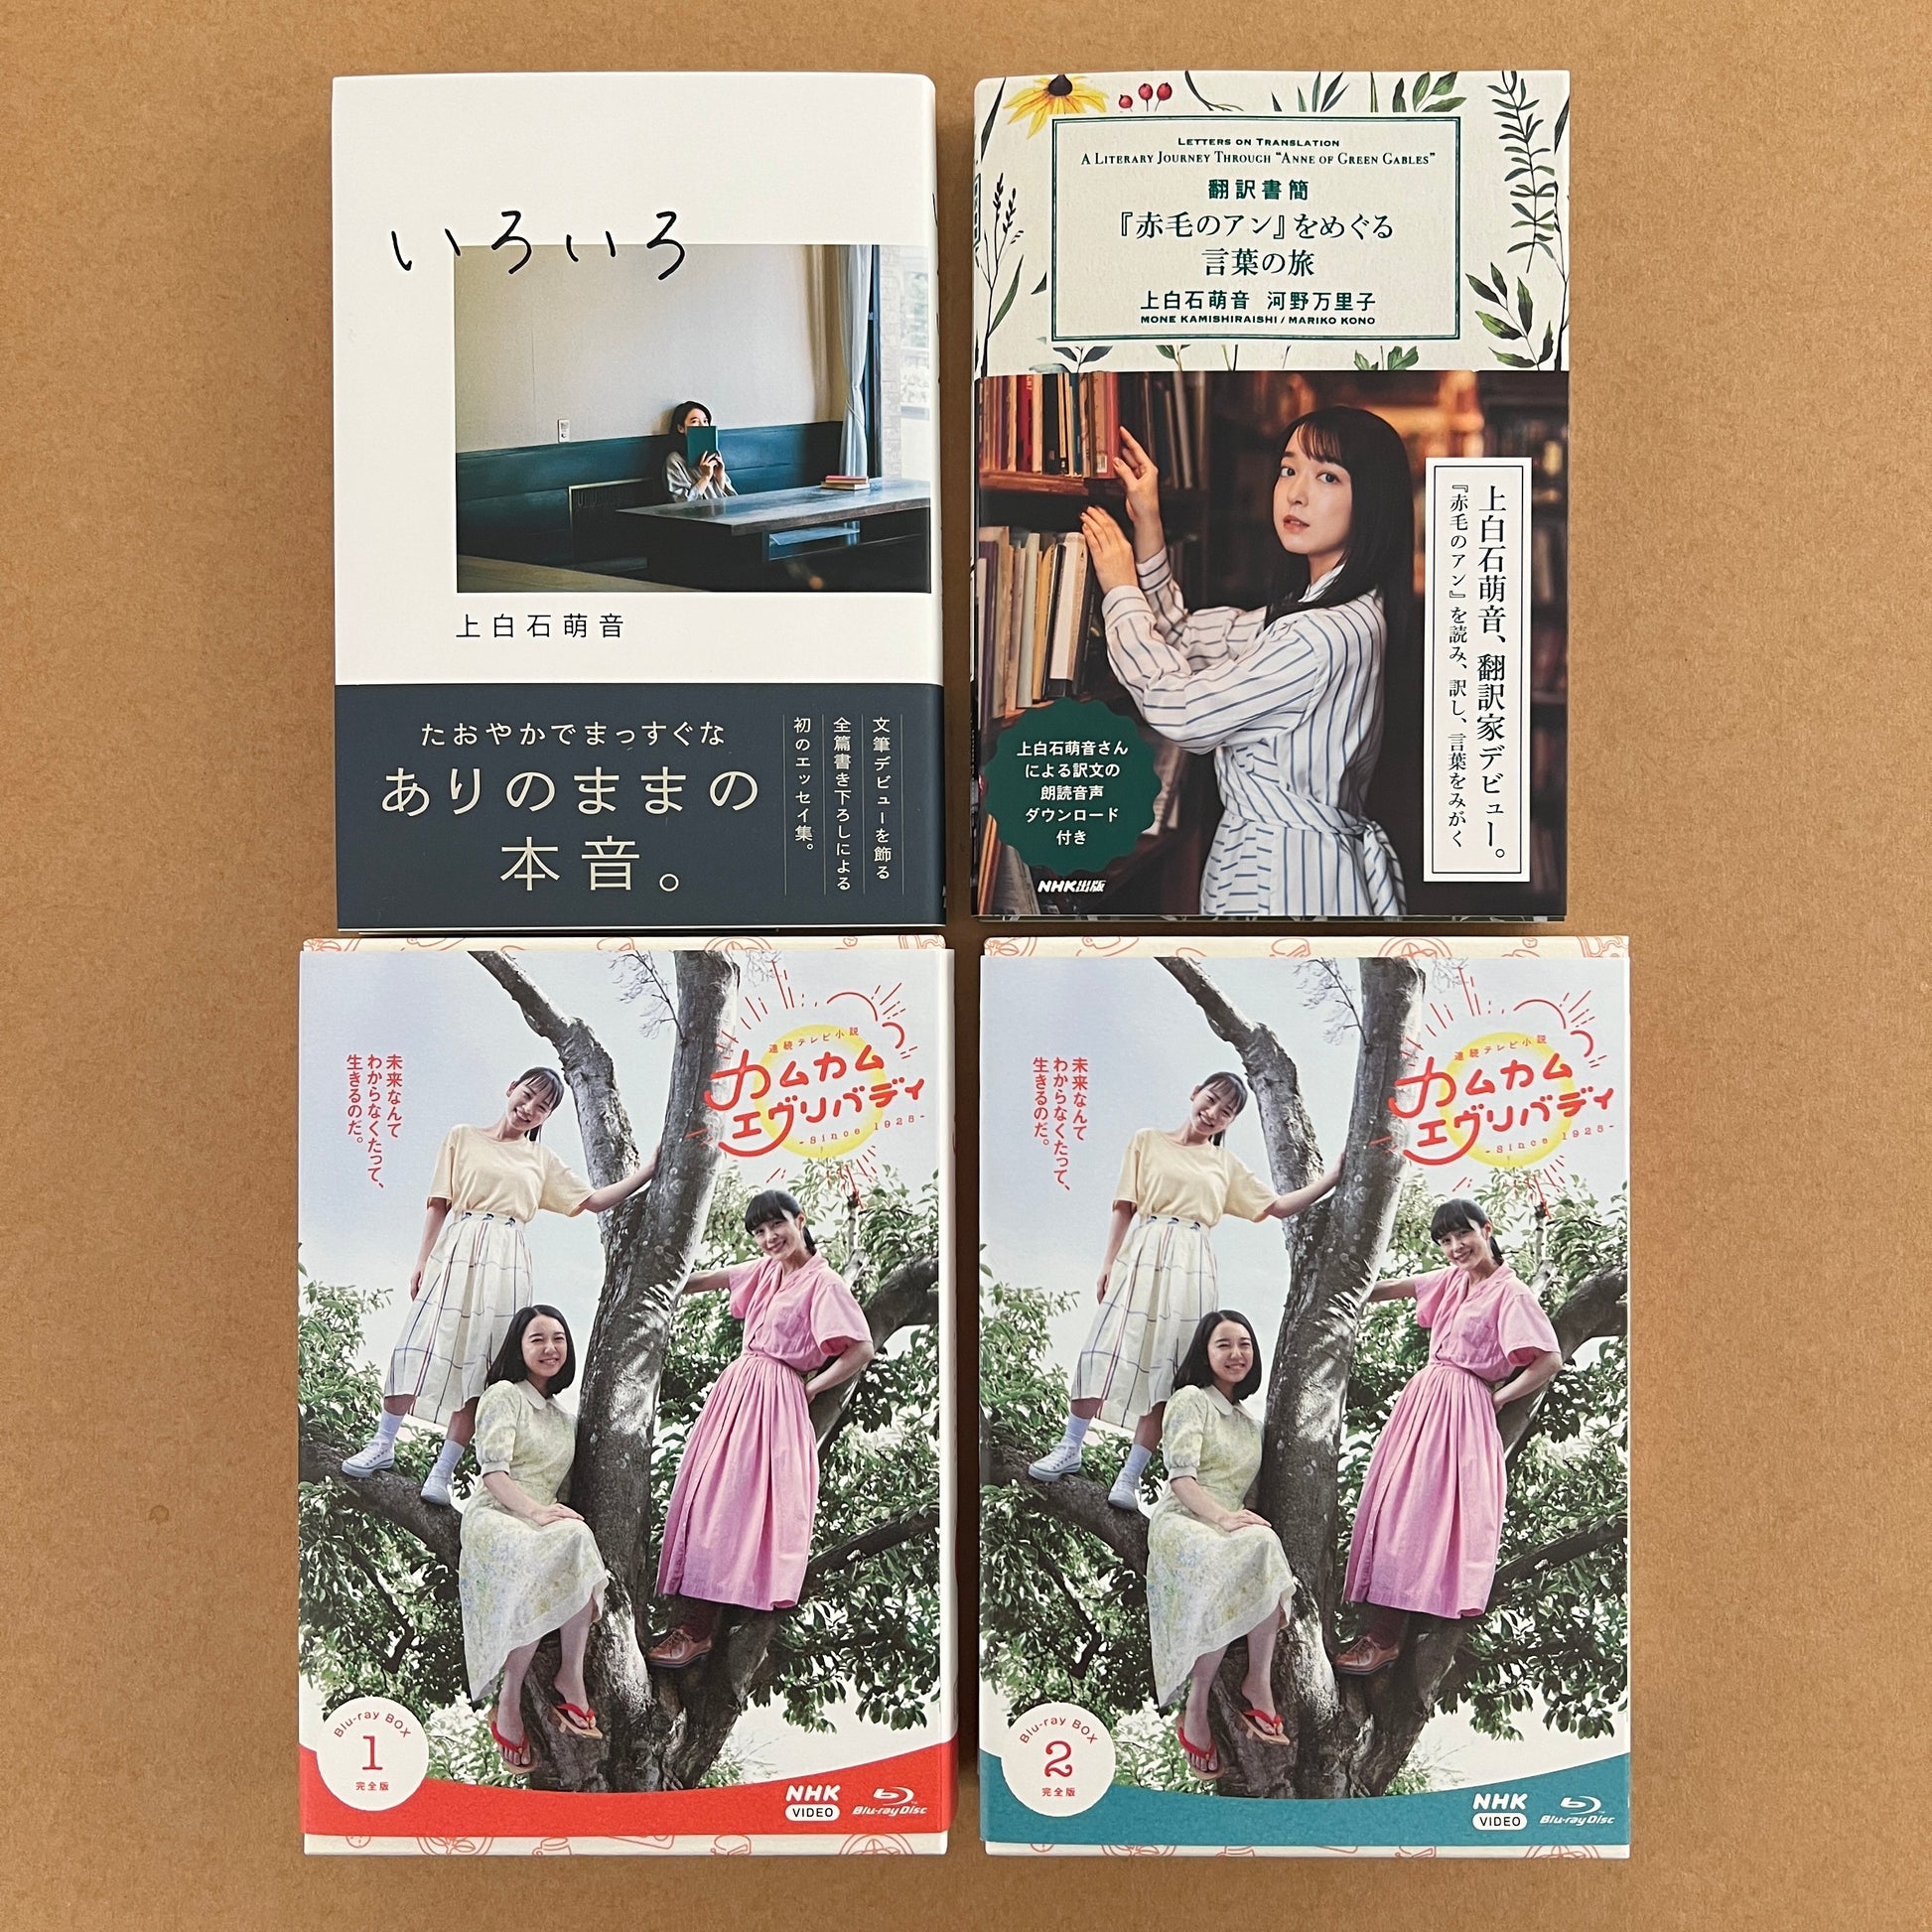 連続テレビ小説 カムカムエヴリバディ 完全版 ブルーレイBOX1〈4枚組 